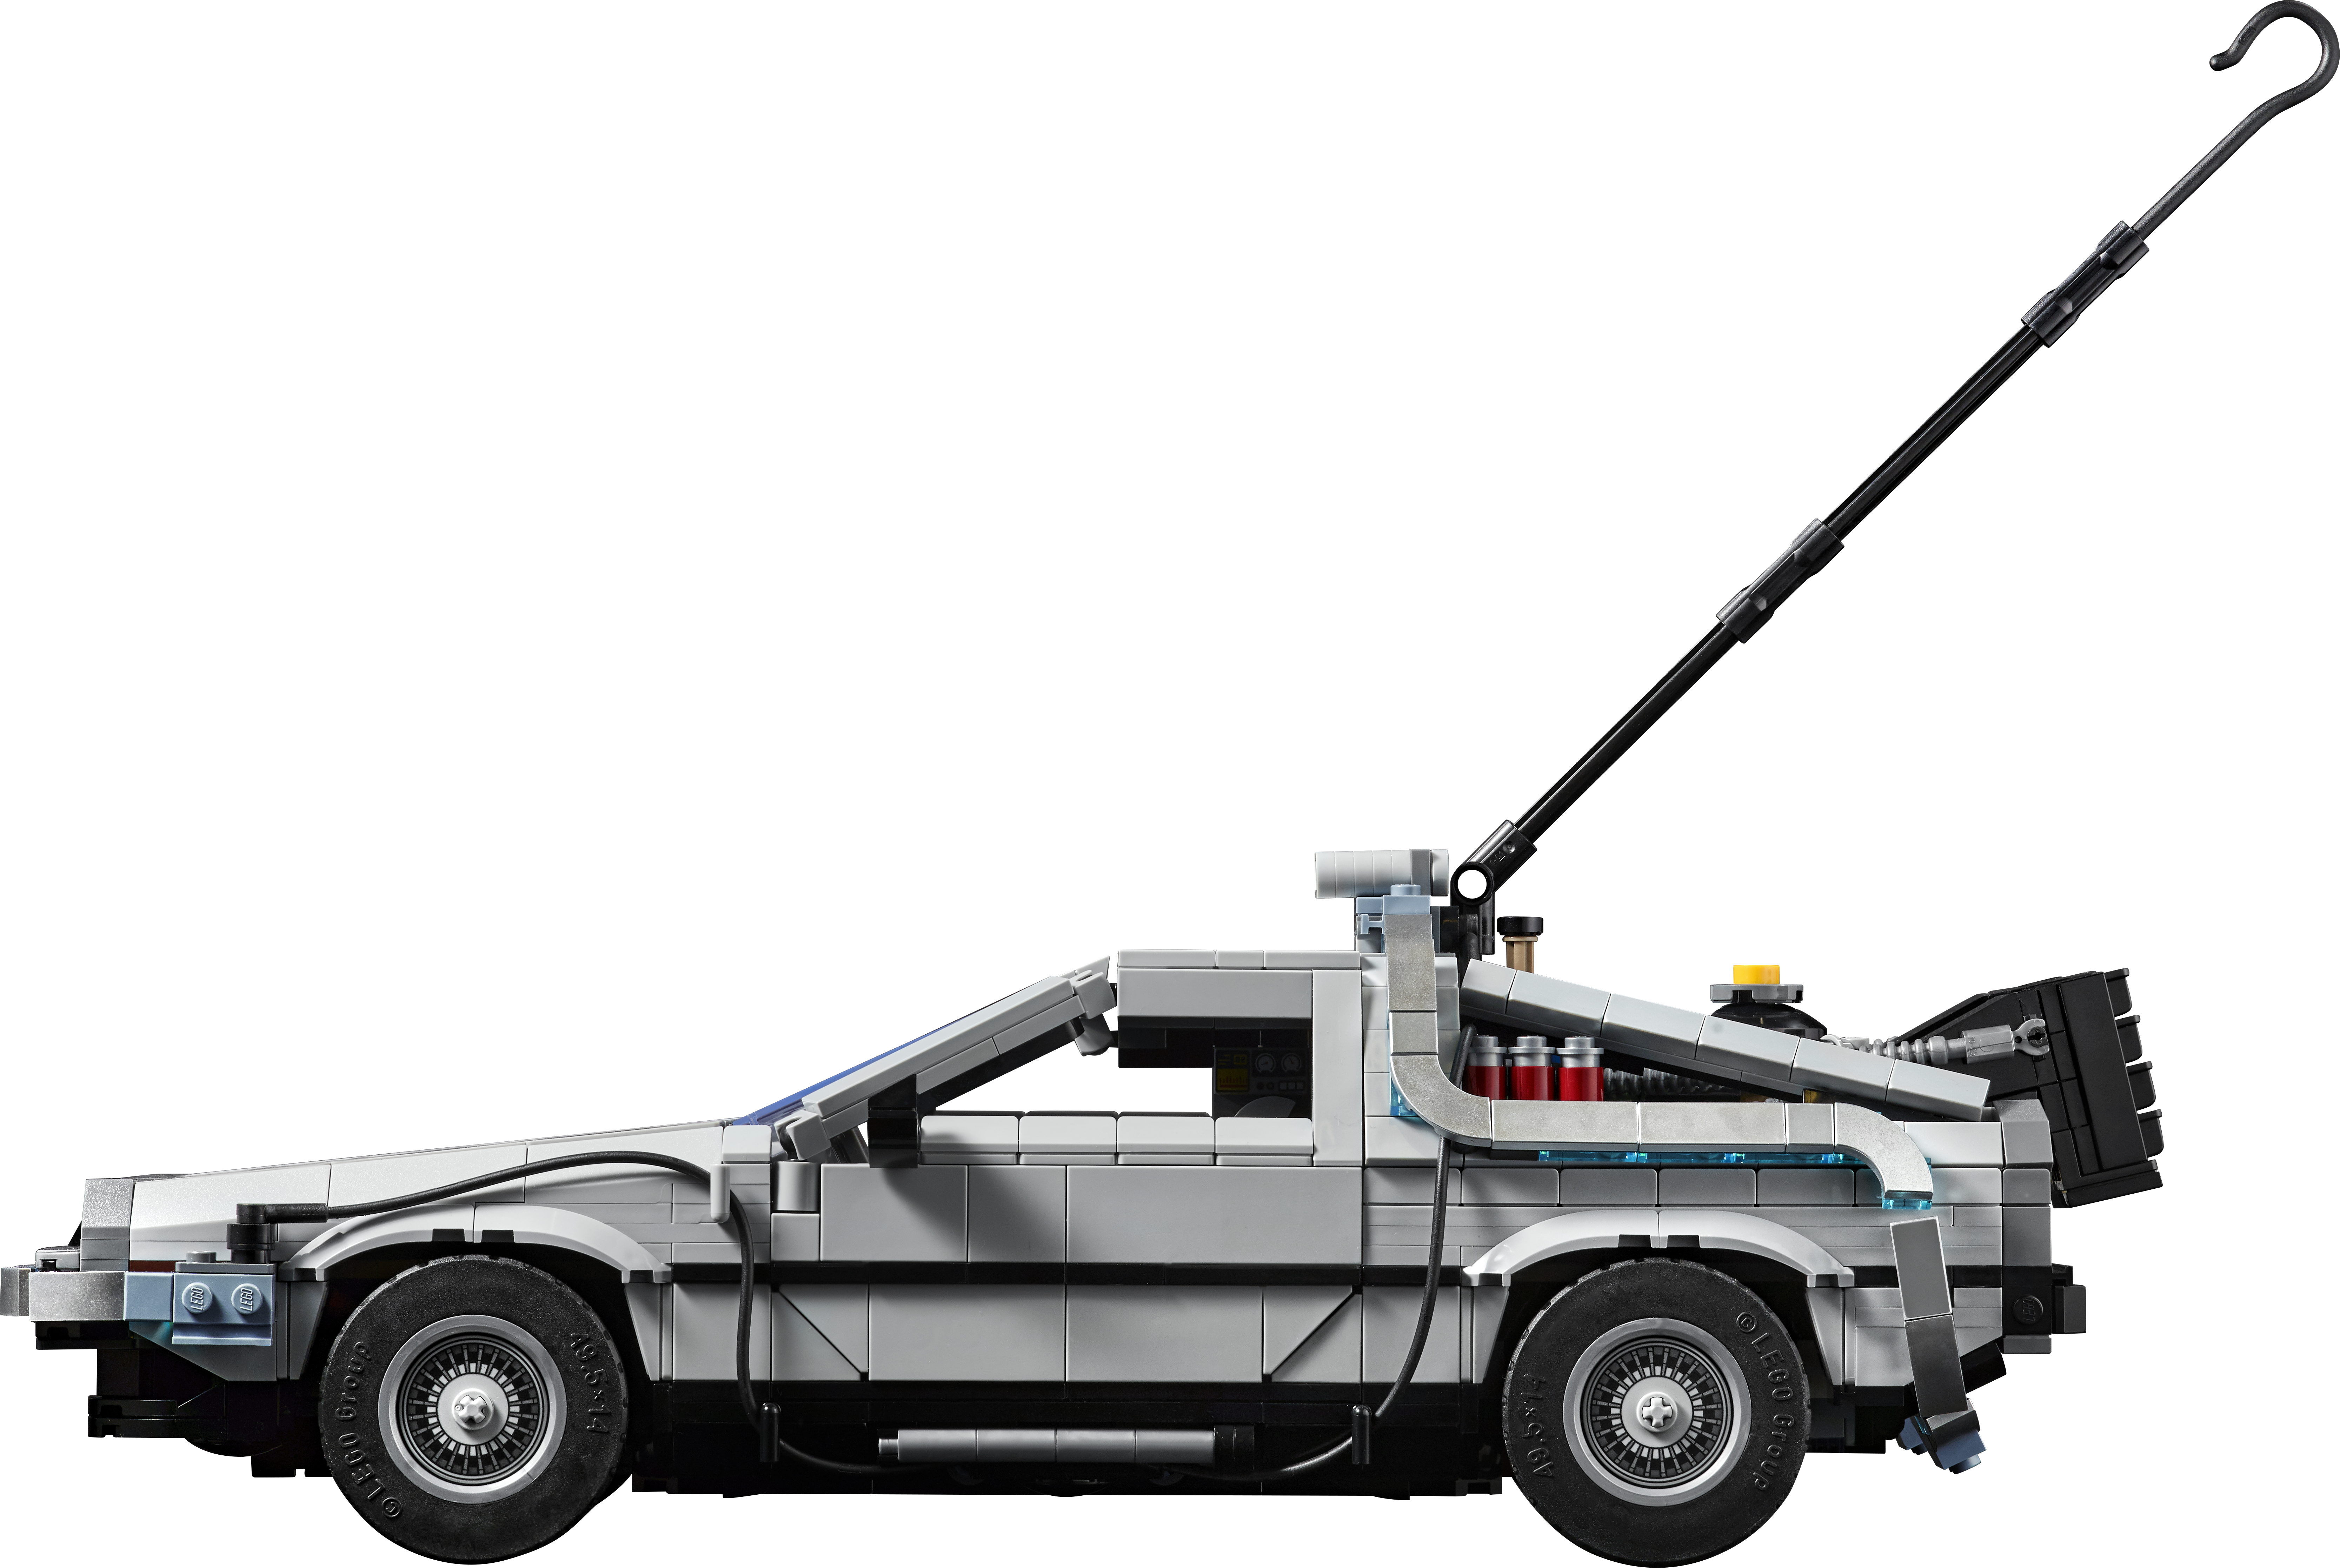 Lego Back to the Future DeLorean DMC-12 10300 F/S FEDEX